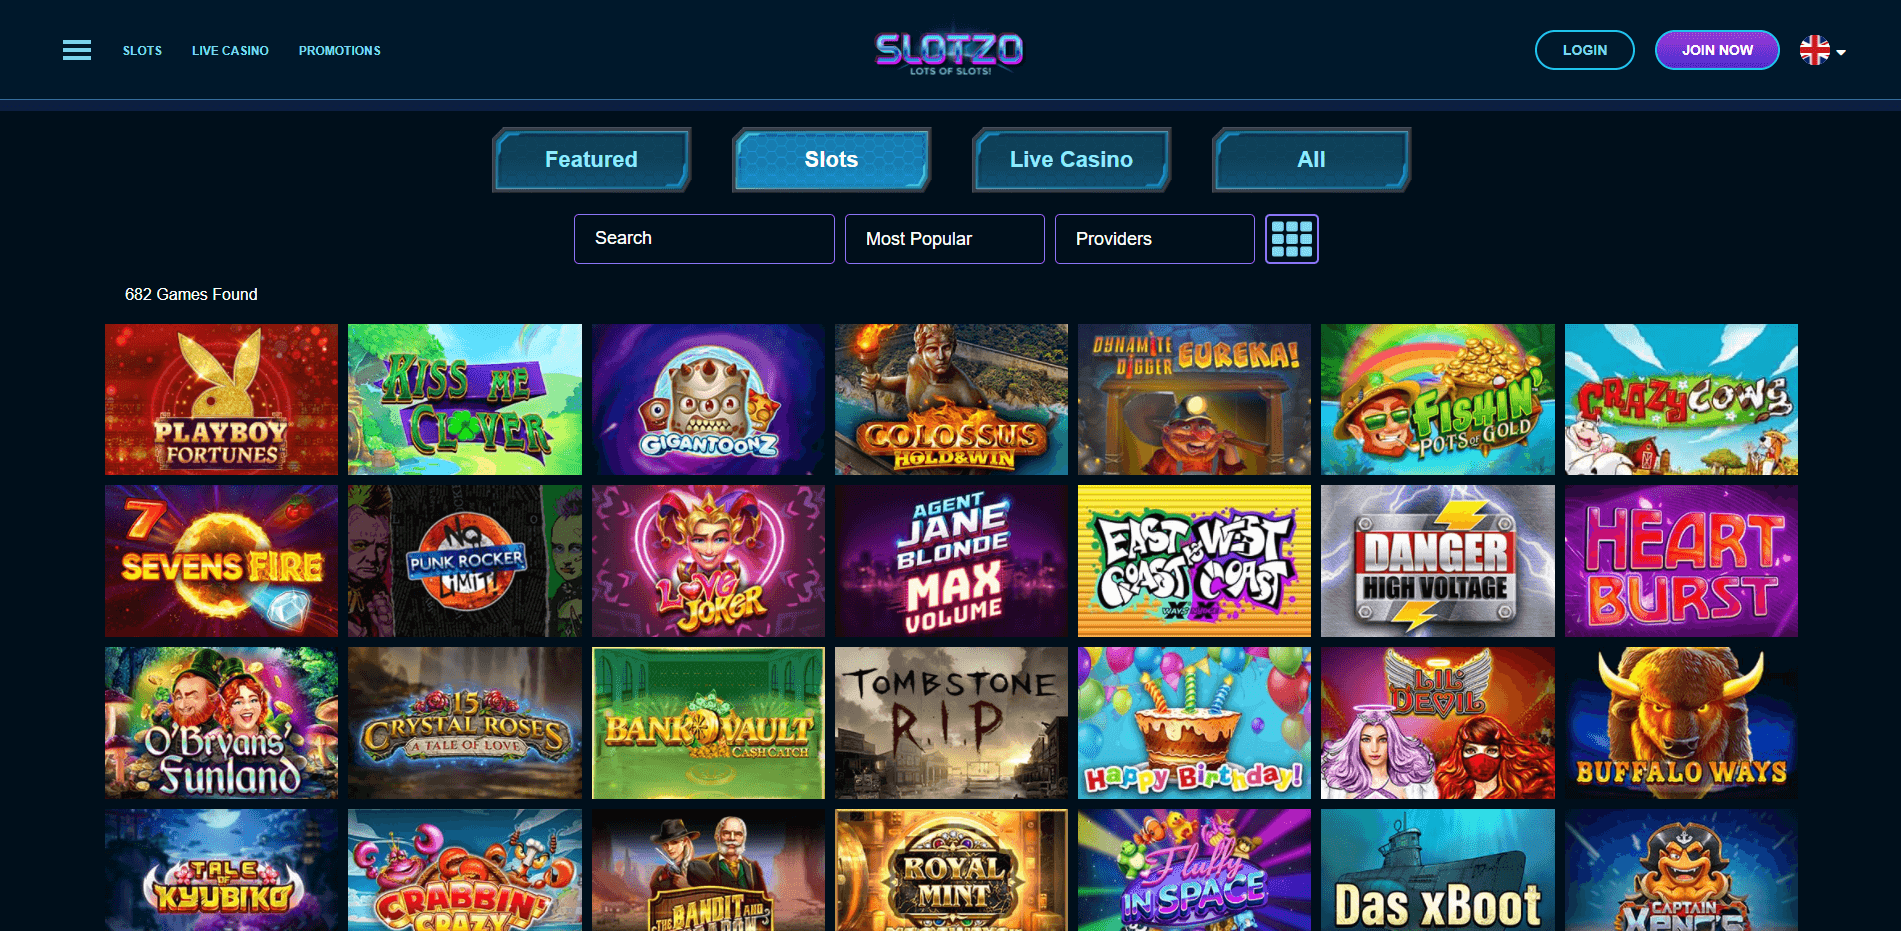 Games at Slotzo Casino